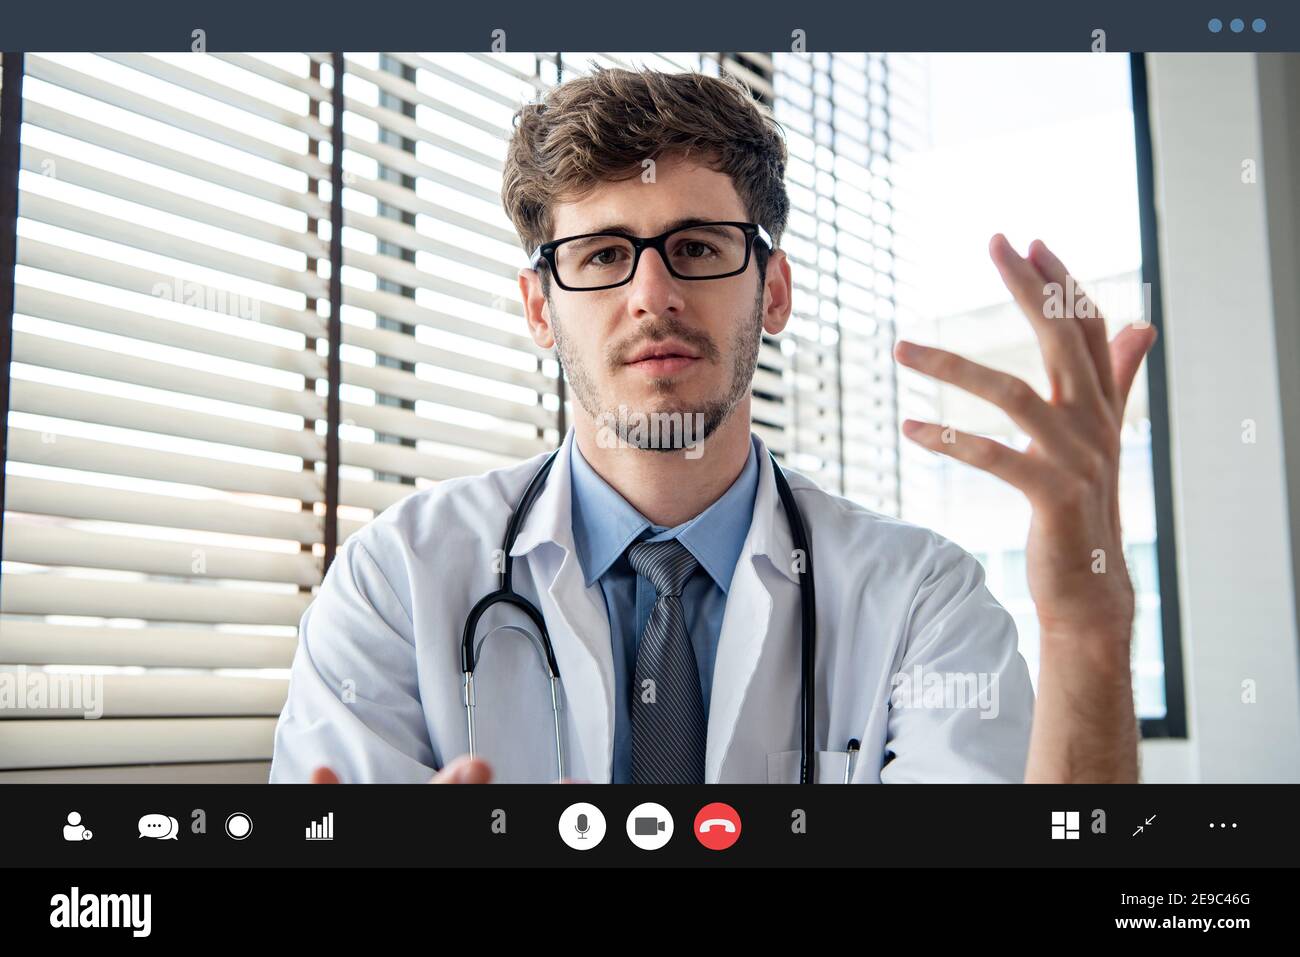 Médecin de sexe masculin faisant un appel vidéo parlant avec le patient, concepts de services de consultation médicale en ligne Banque D'Images